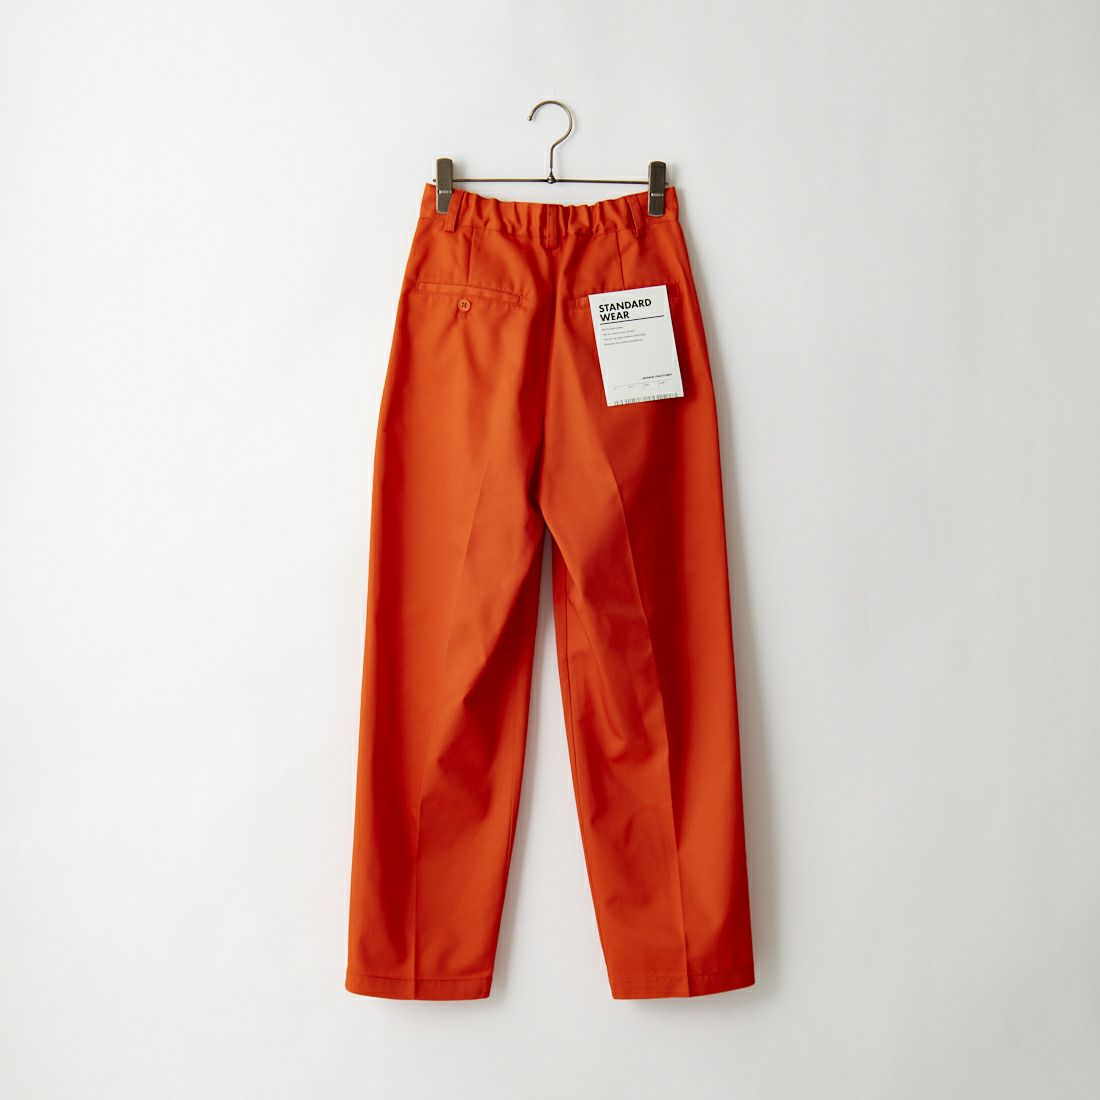 Jeans Factory Clothes [ジーンズファクトリークローズ] 1タック イージースラックスパンツ [22AWINW-03PT] ORANGE